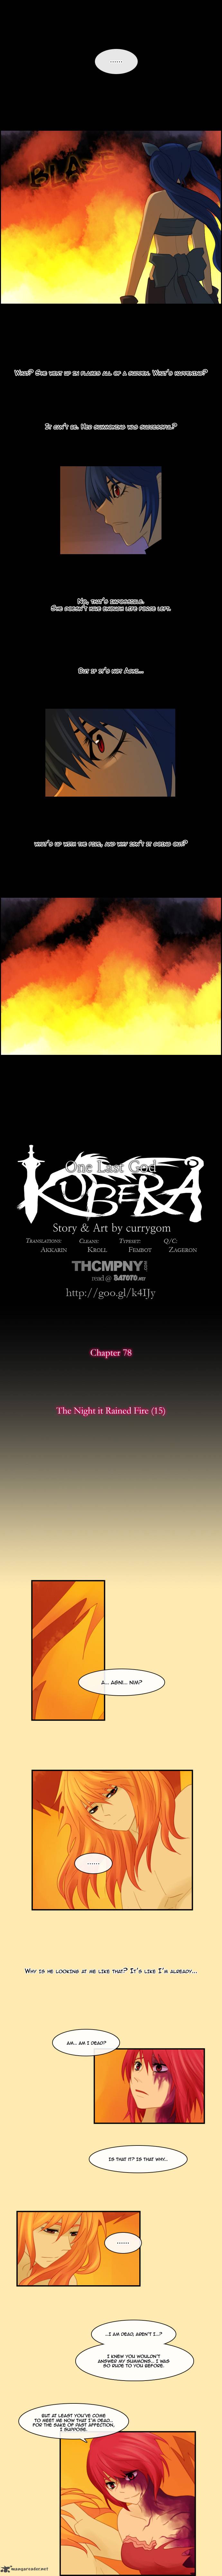 Kubera Chapter 78 Page 1